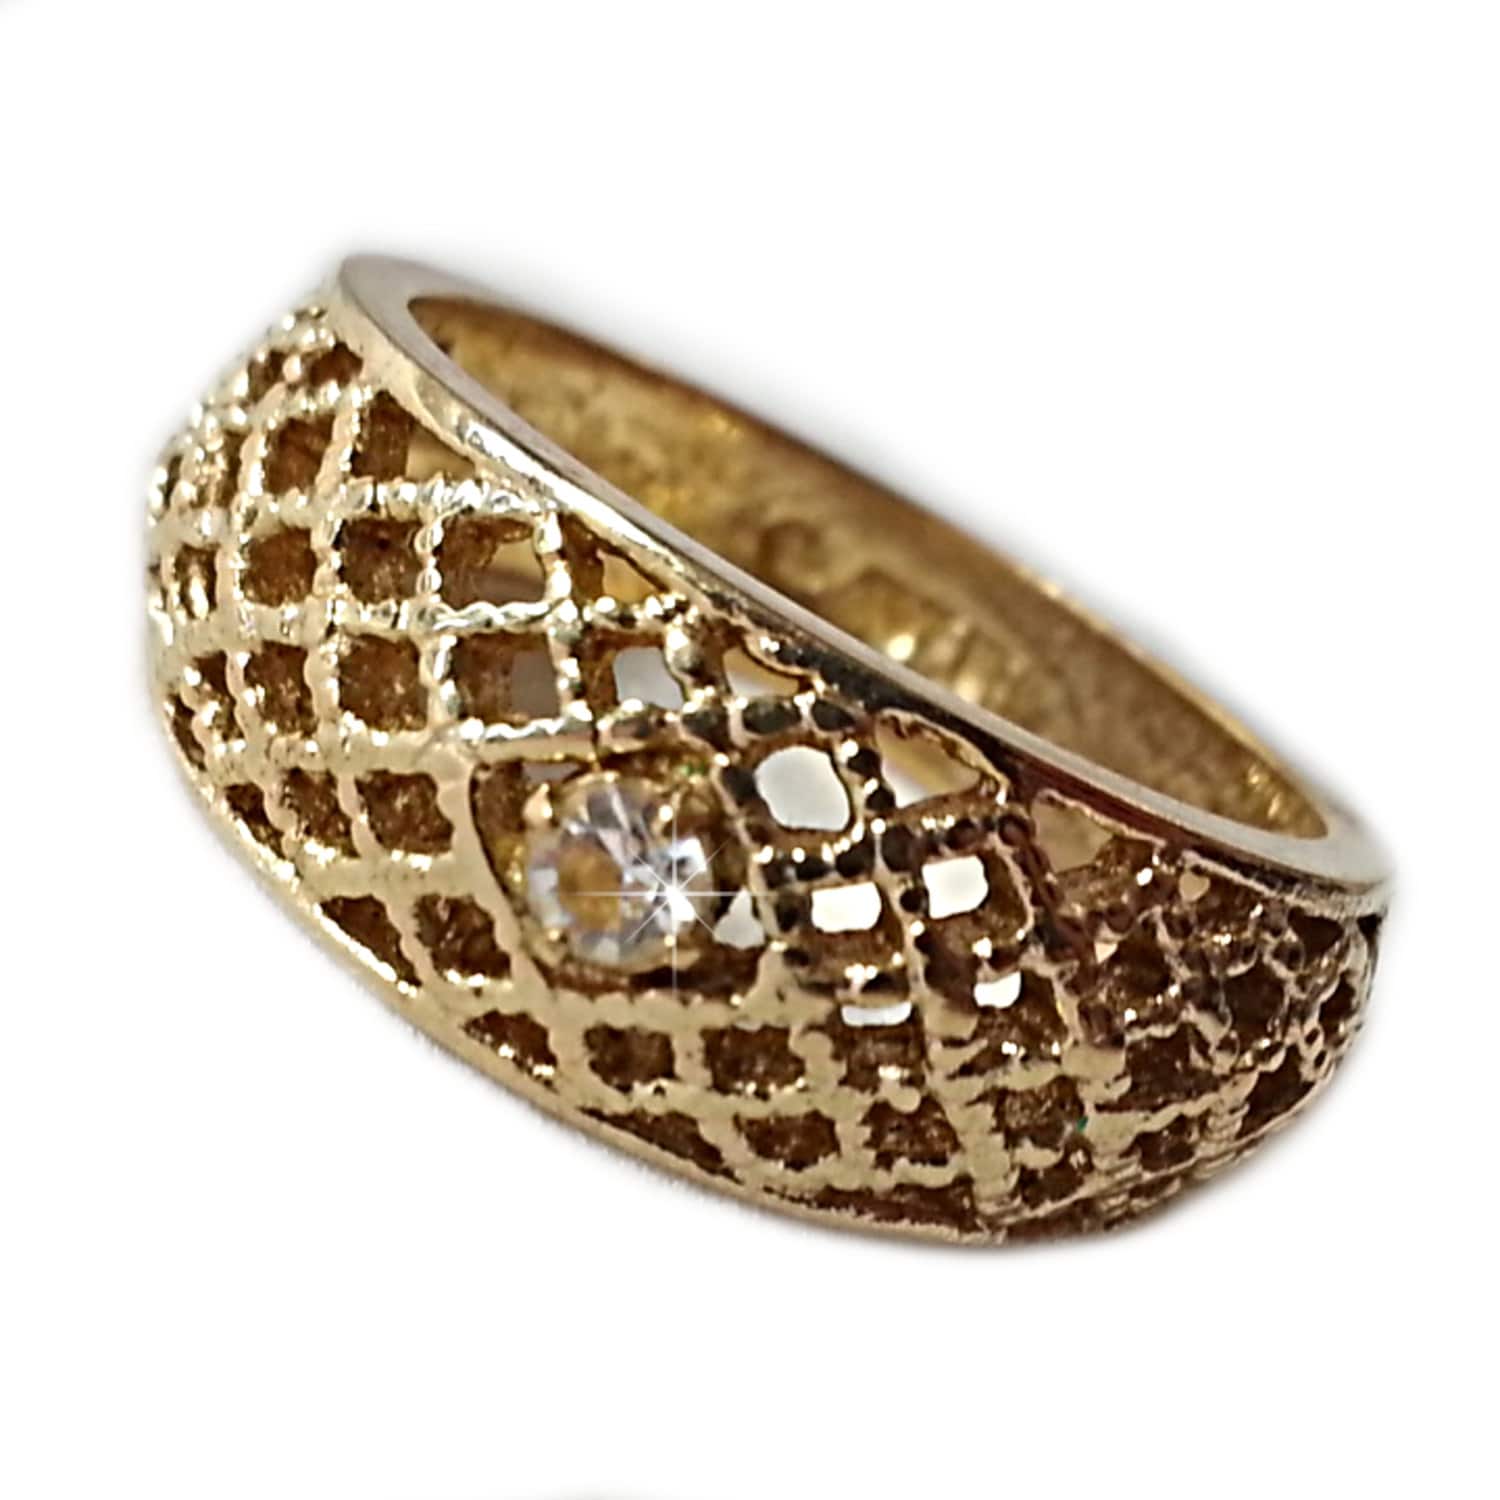 Basket Weave Ring Avon Vintage Rhinestone Gold by RomeoetJuliet